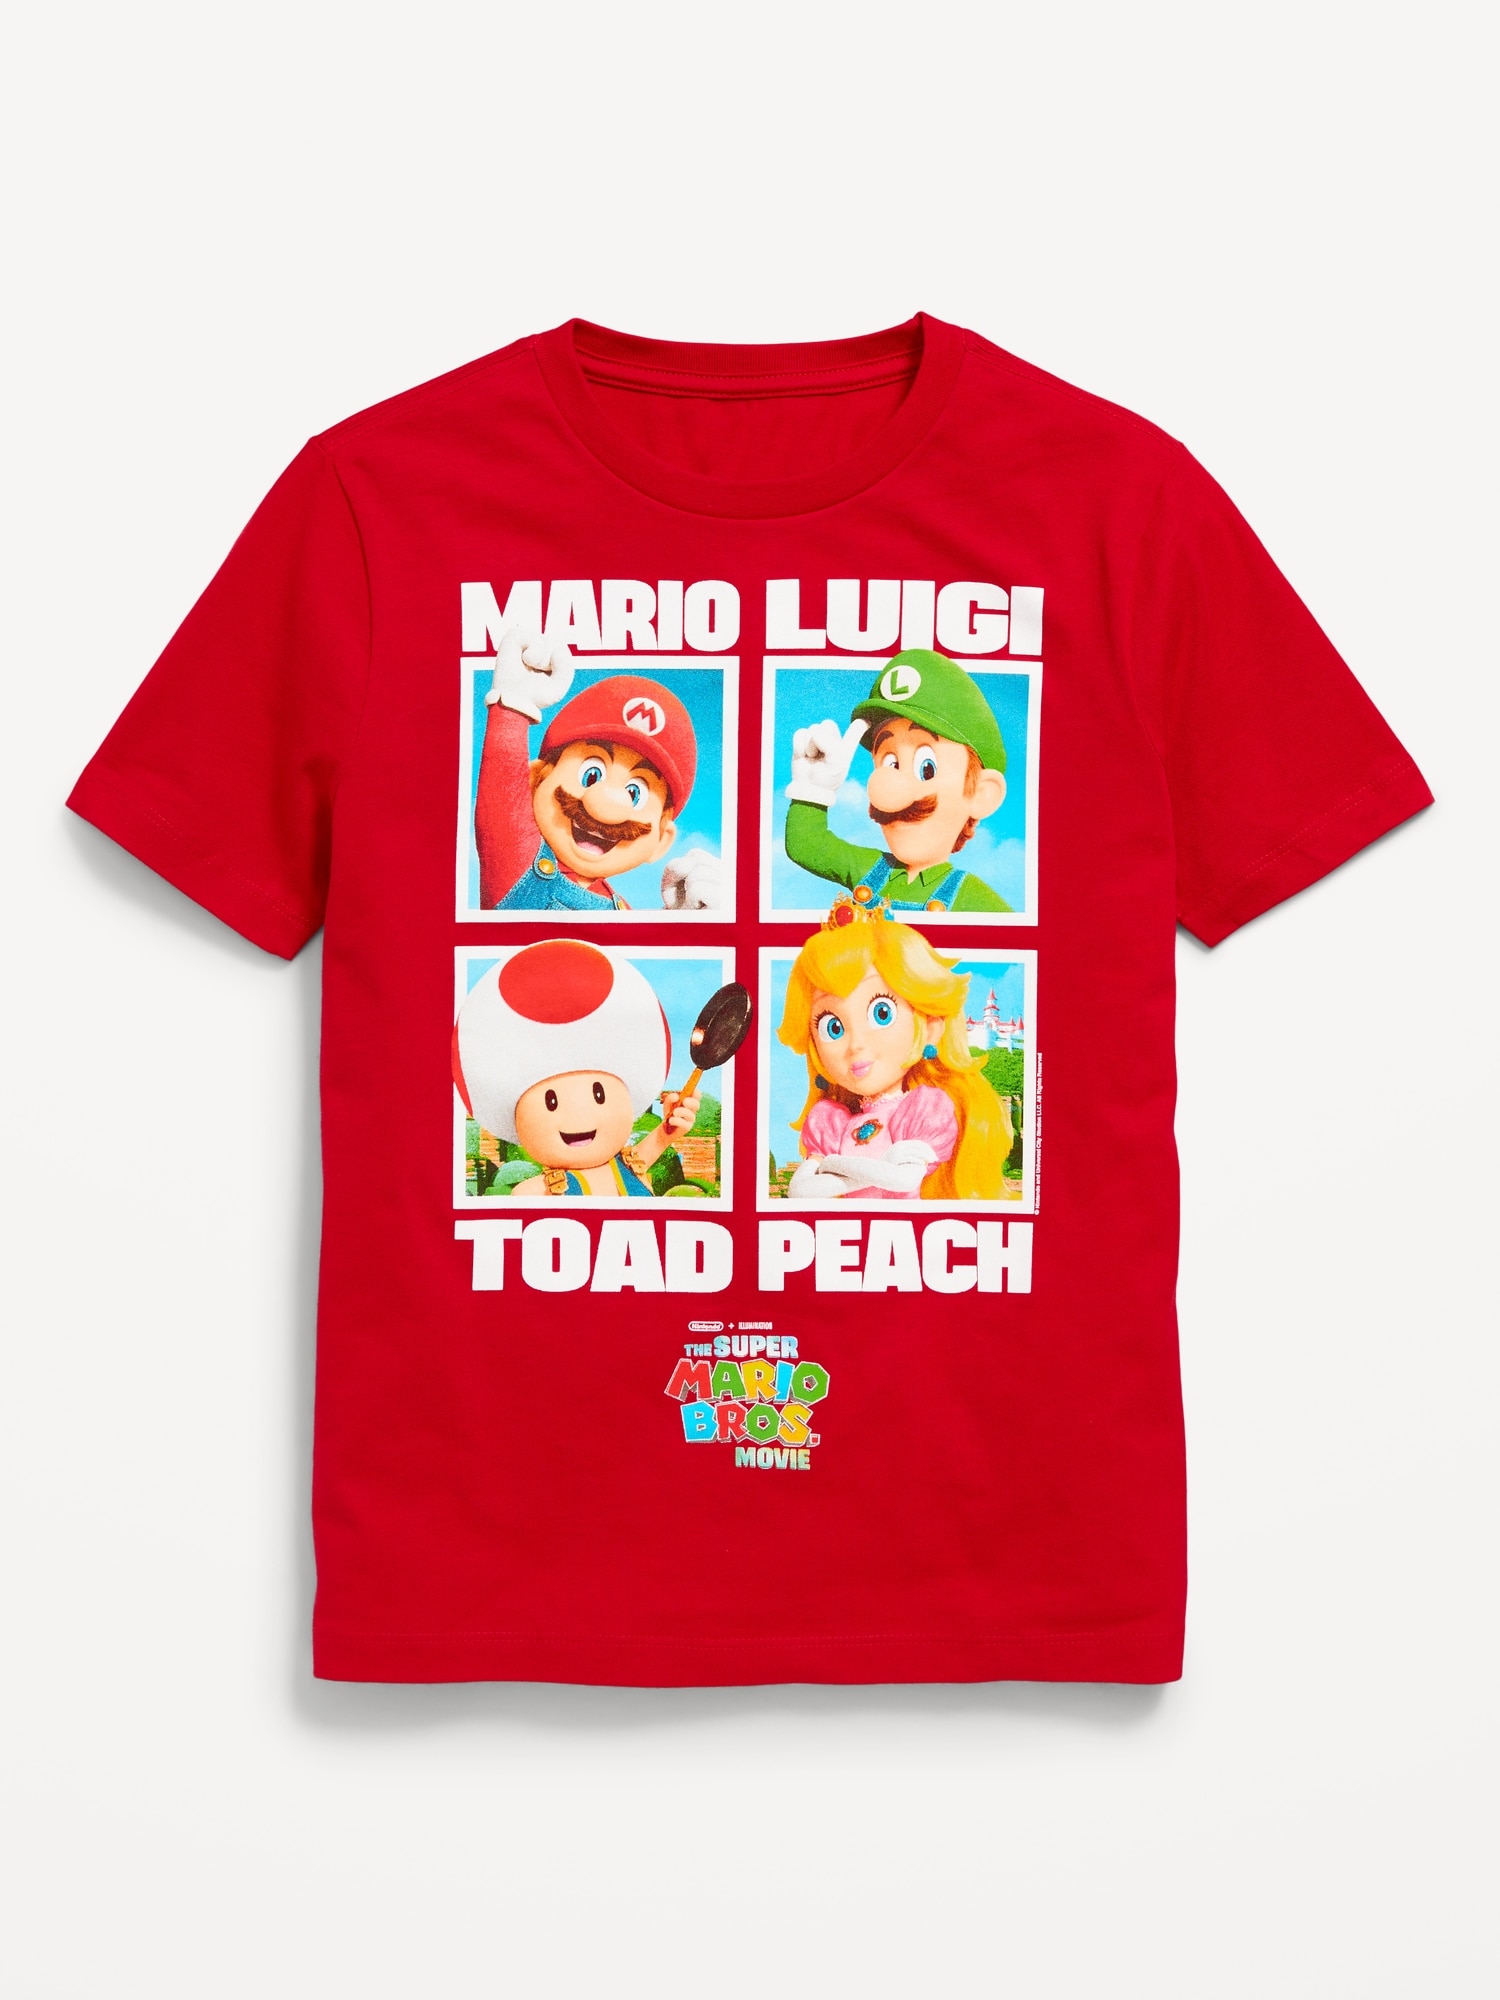 Airbrush Mario & Luigi Cartoon Shirt Design – Airbrush Brothers